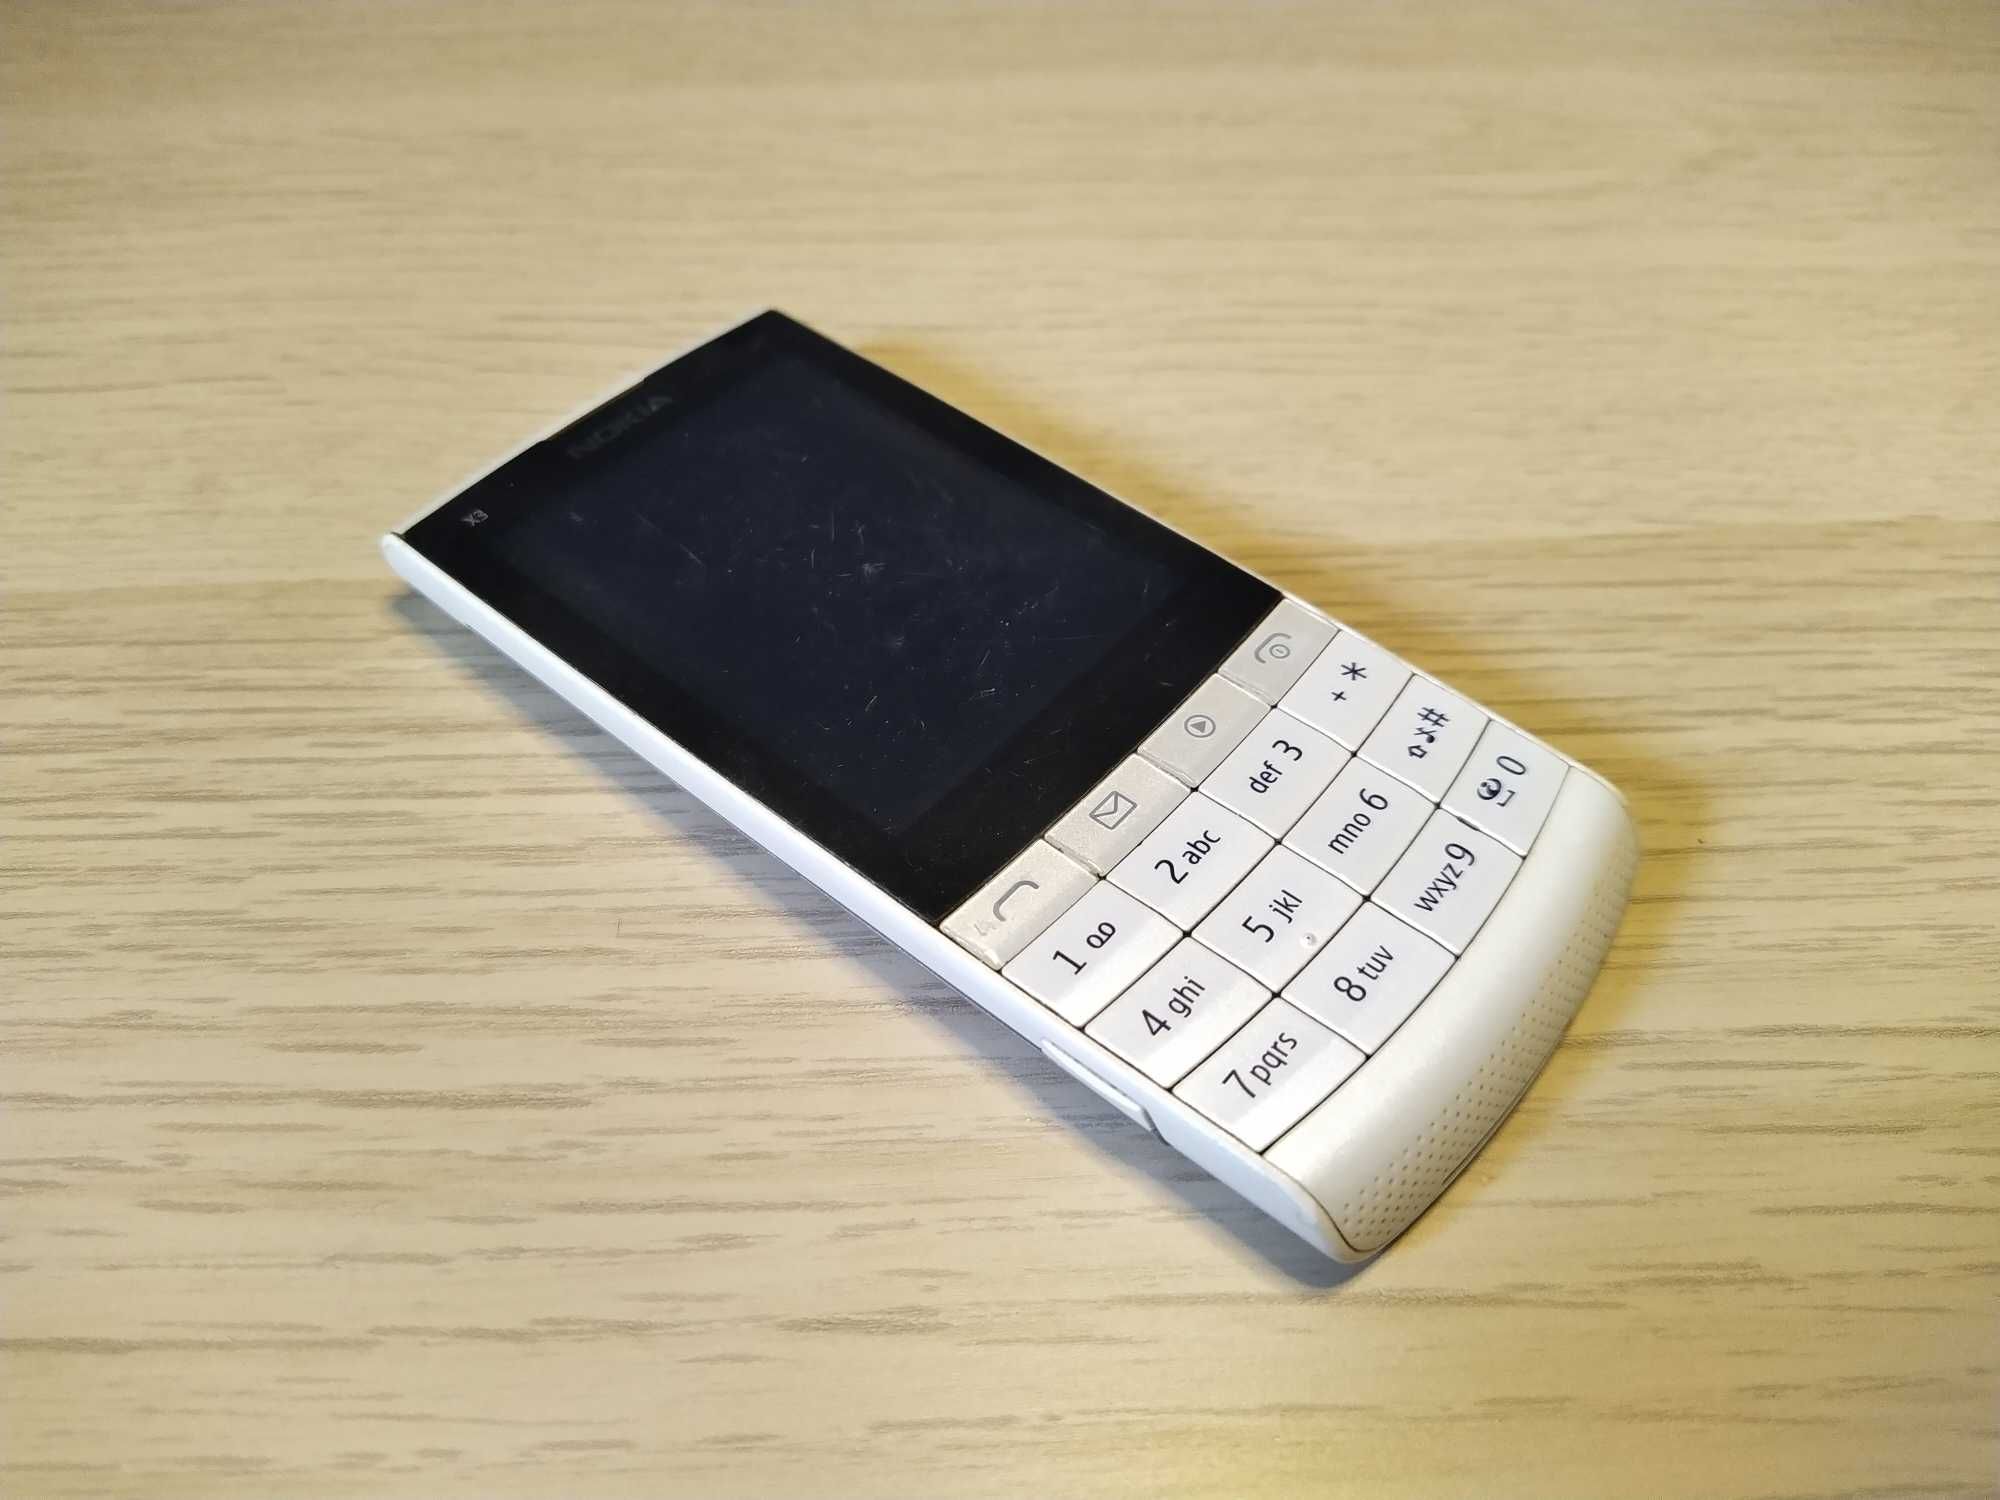 Nokia X3-02 сенсорный